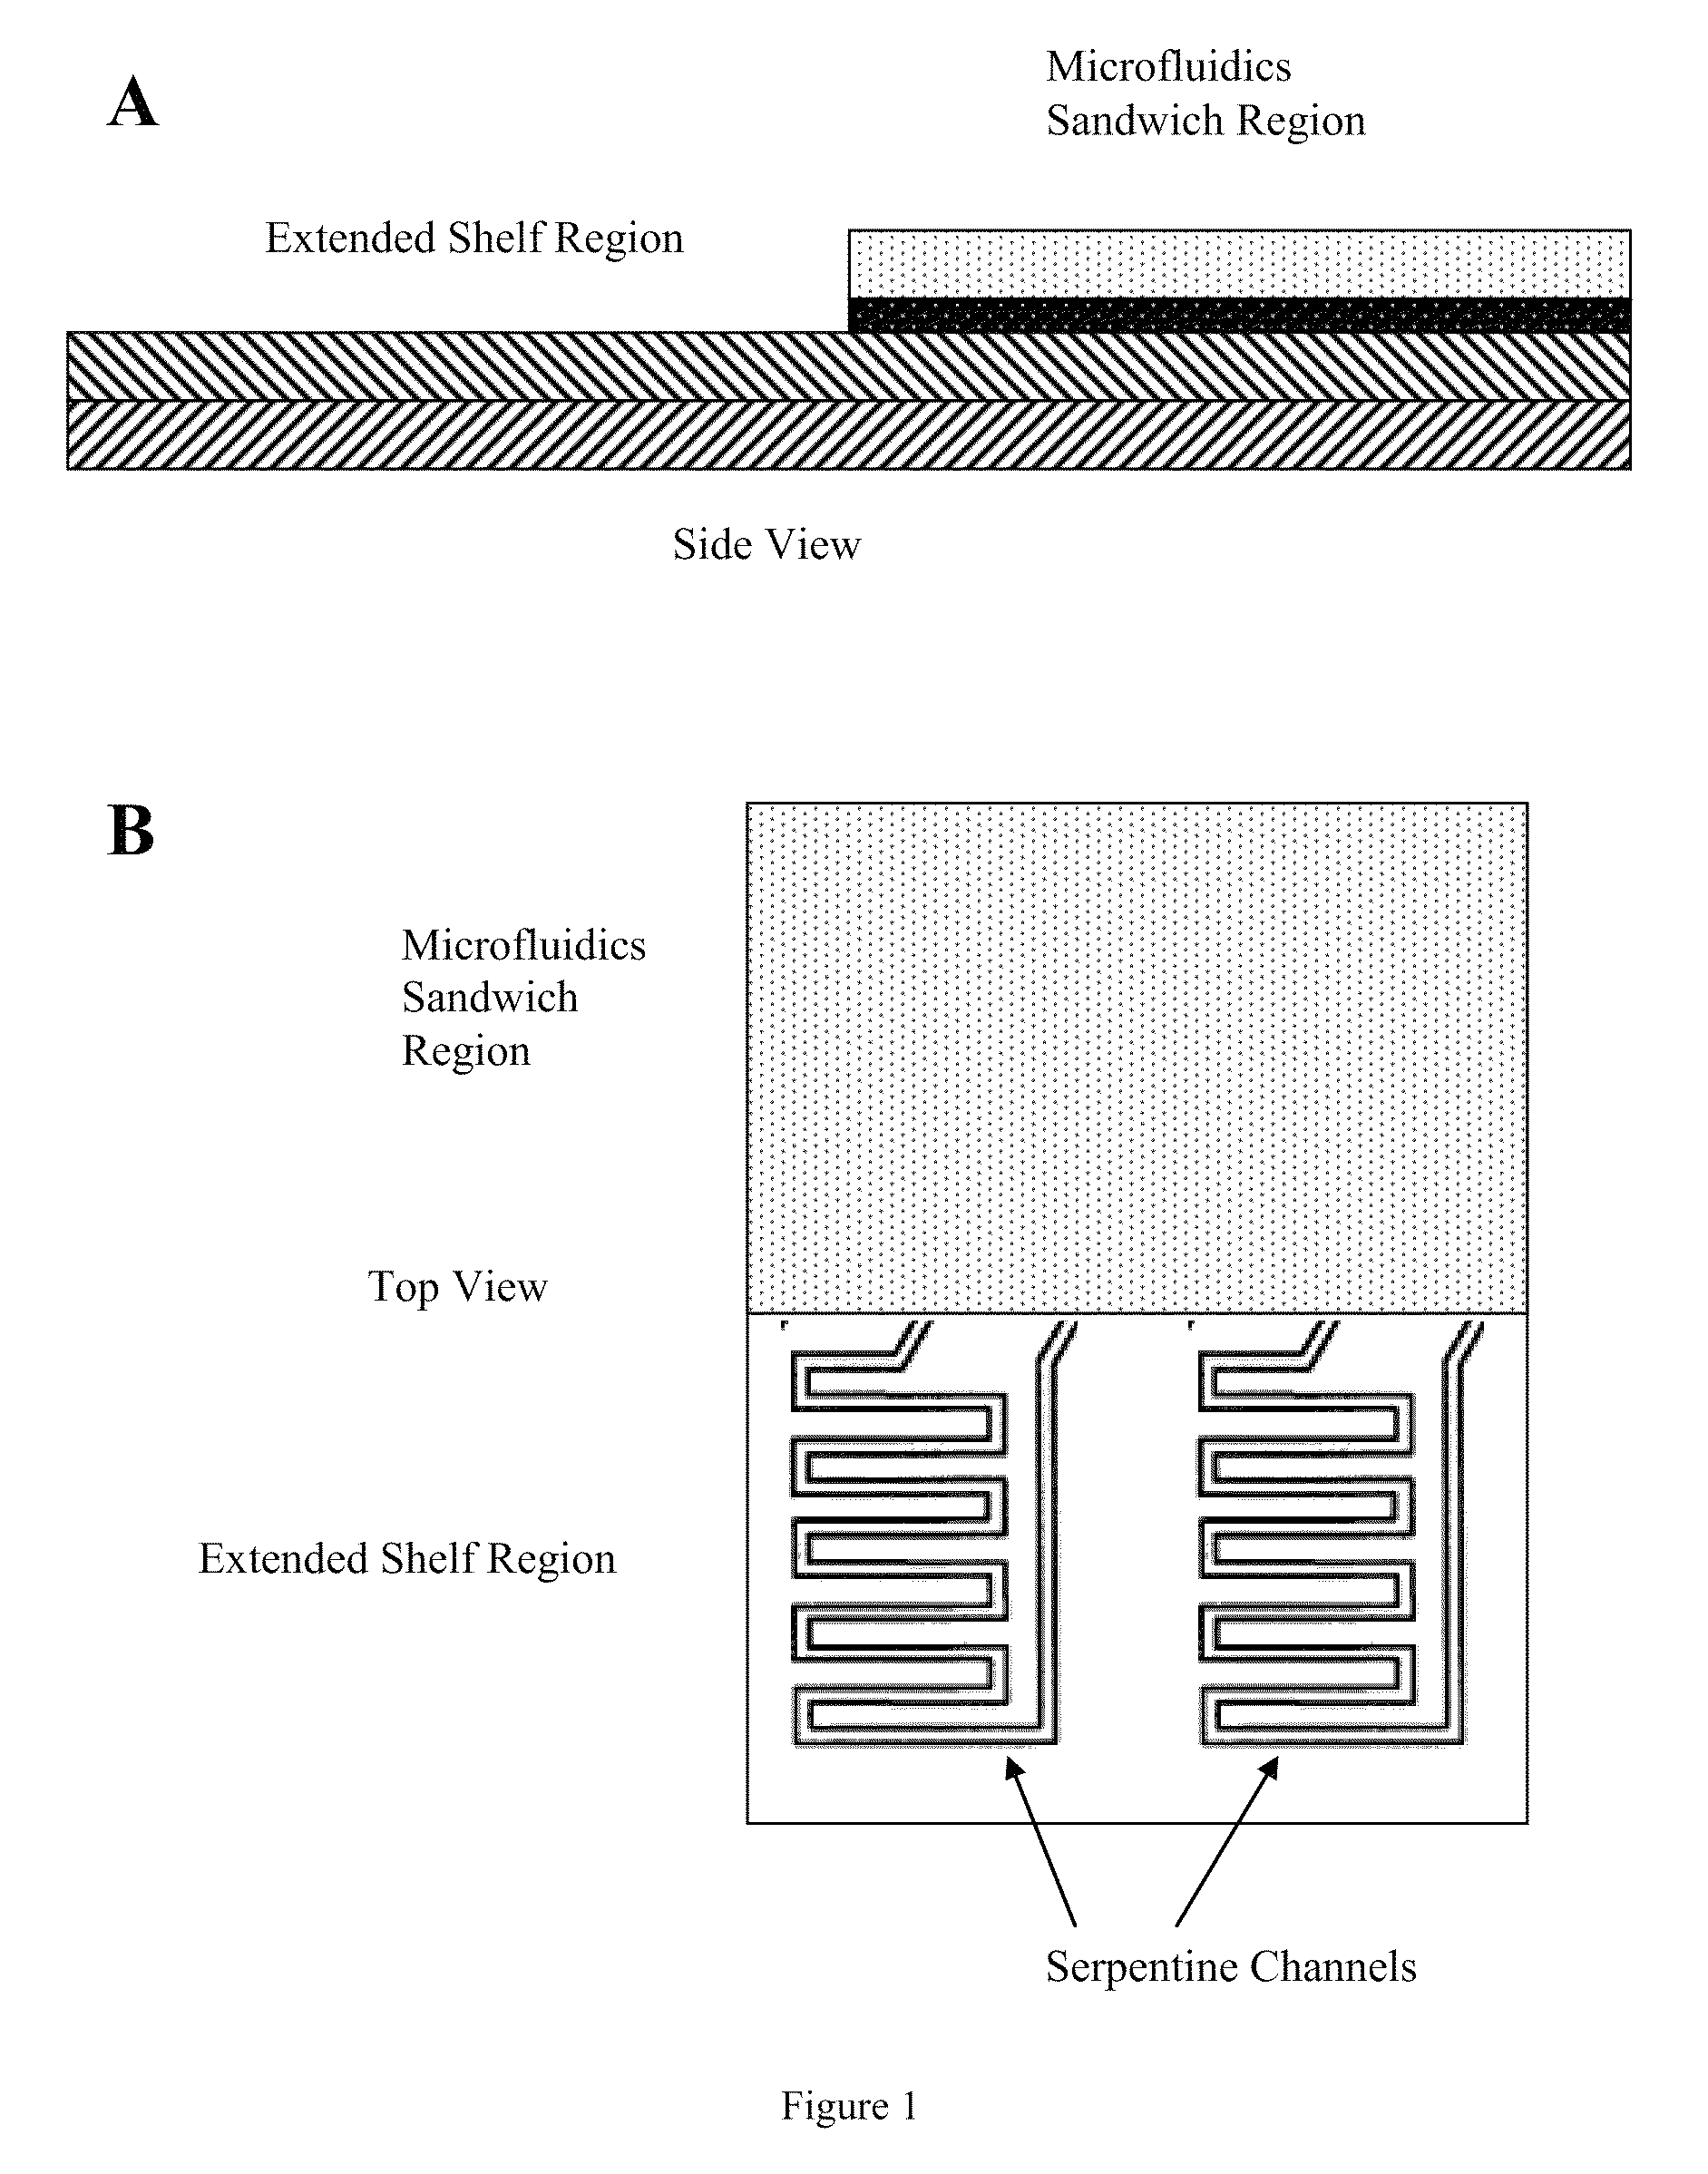 Microfluidic methods